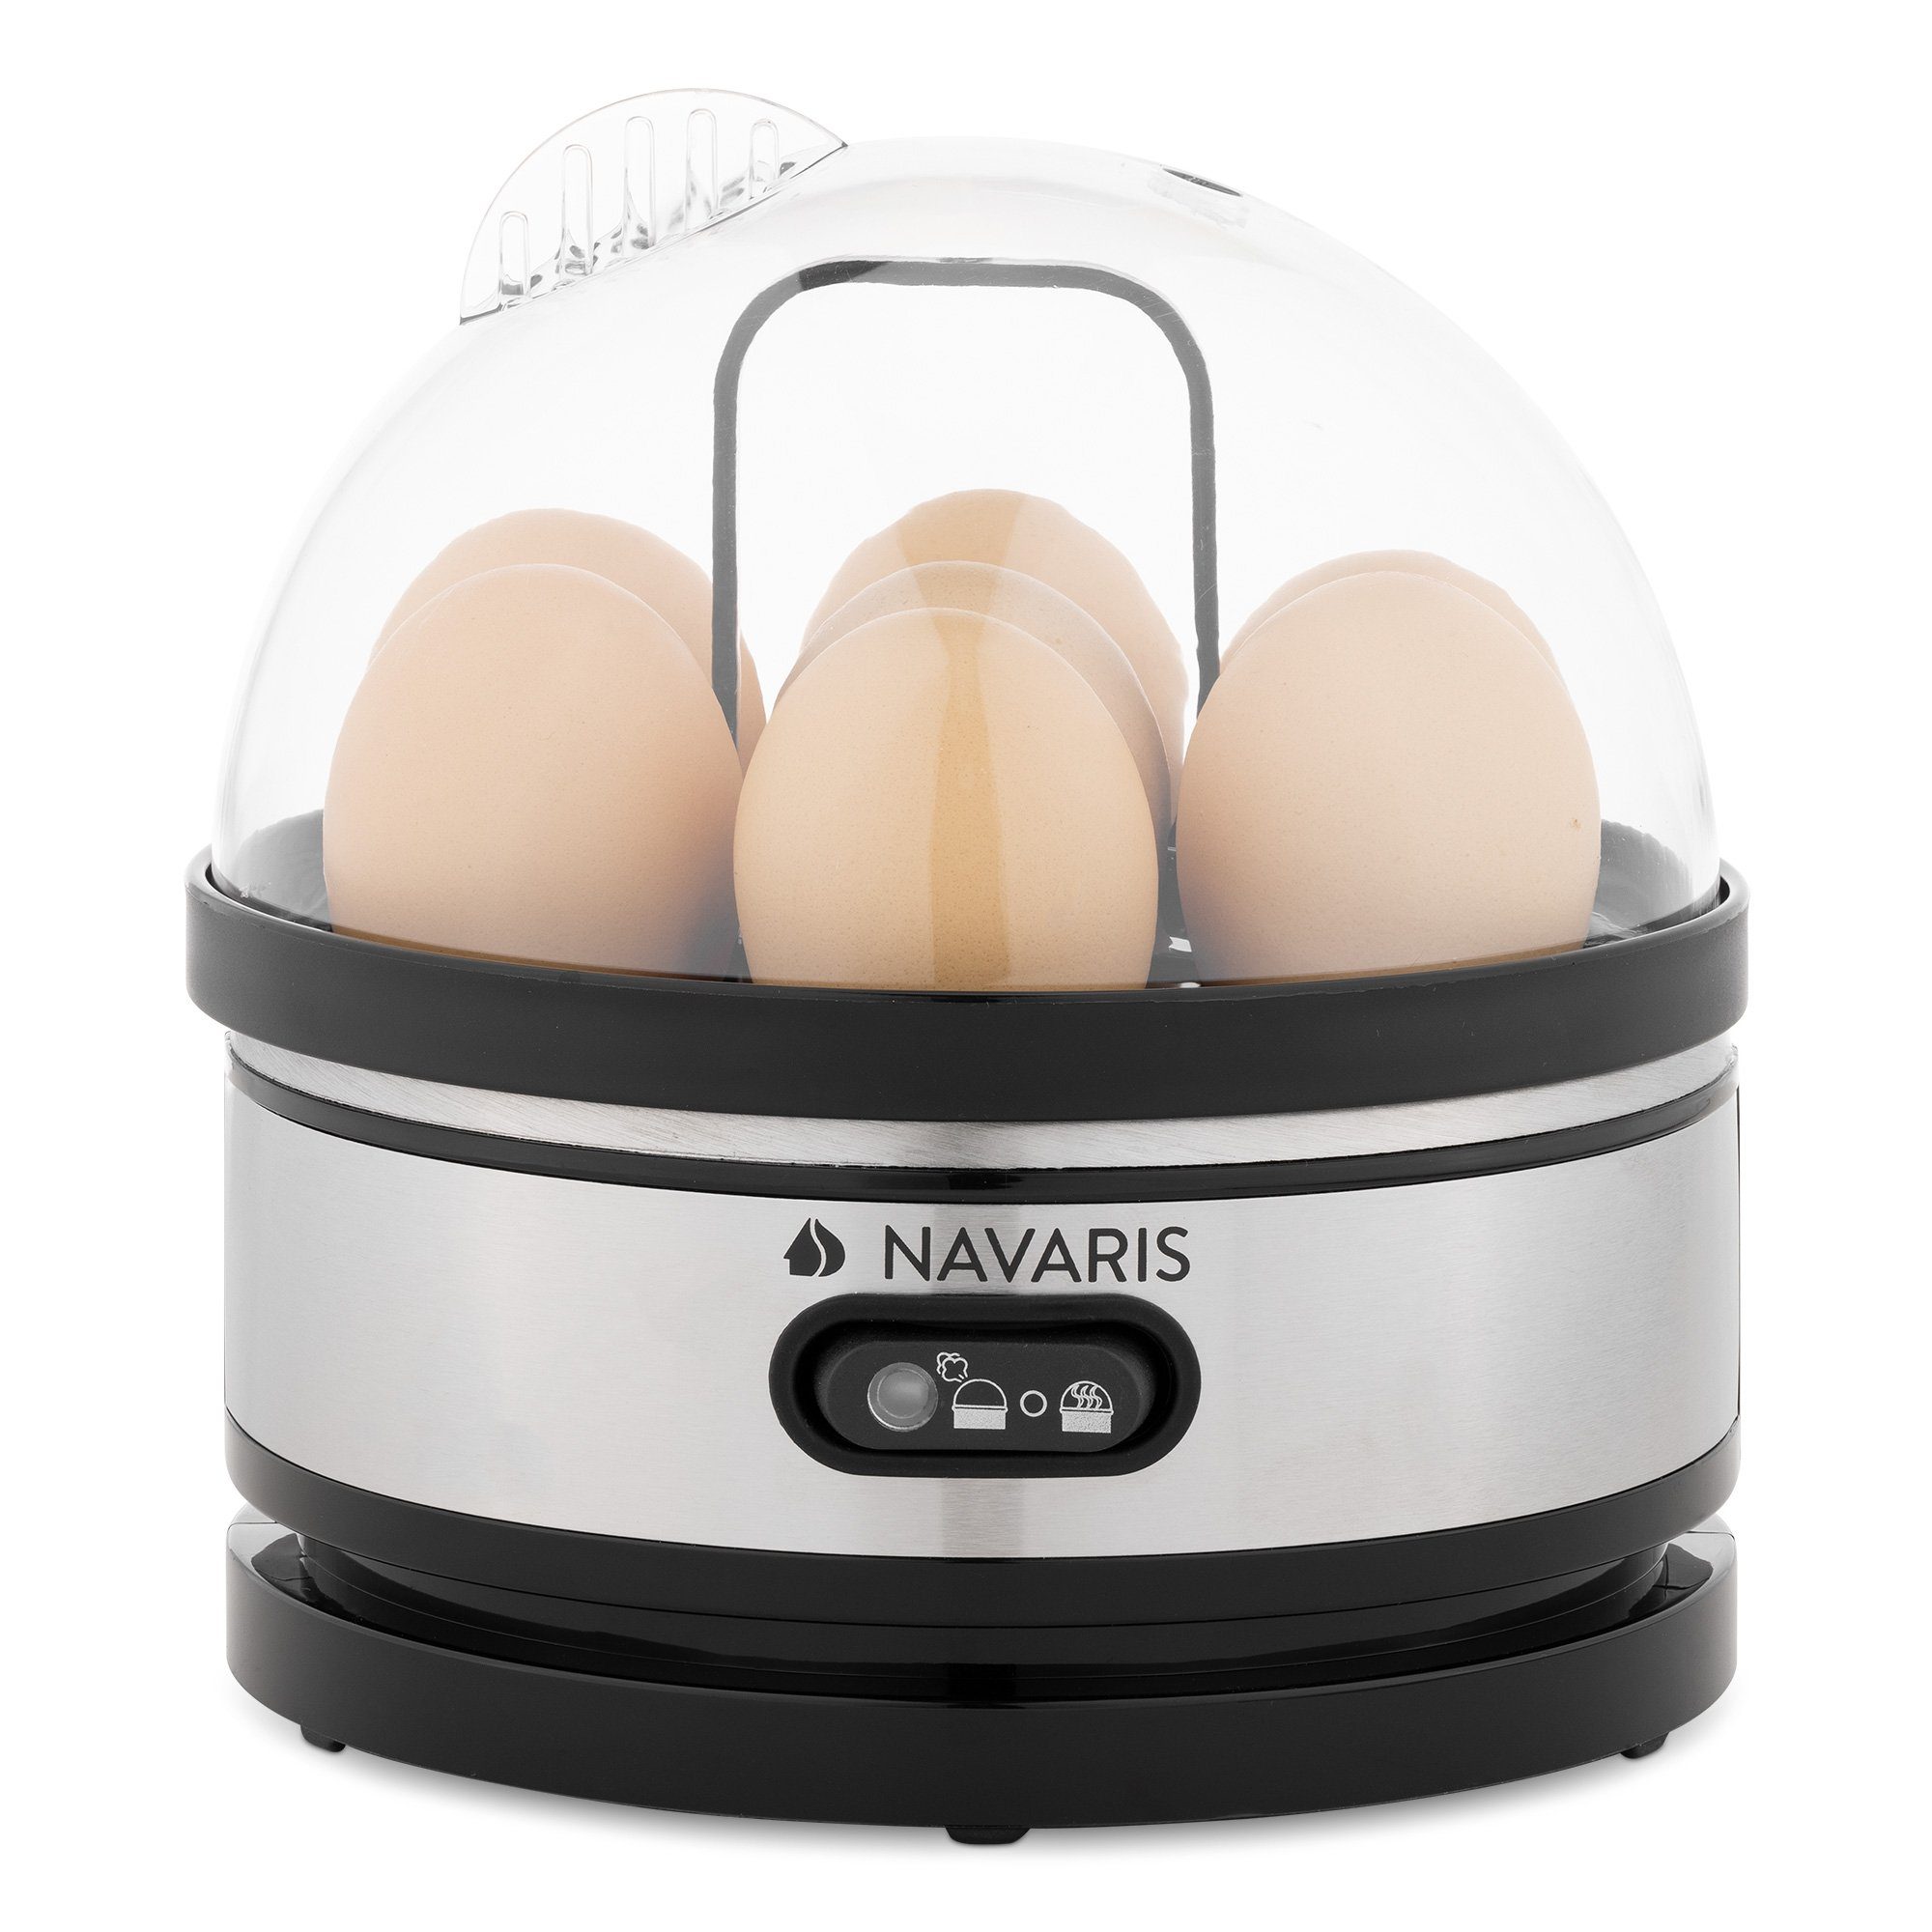 Navaris Eierkocher Eierkocher 7 Eier Edelstahl - 400W - mit Warmhaltefunktion